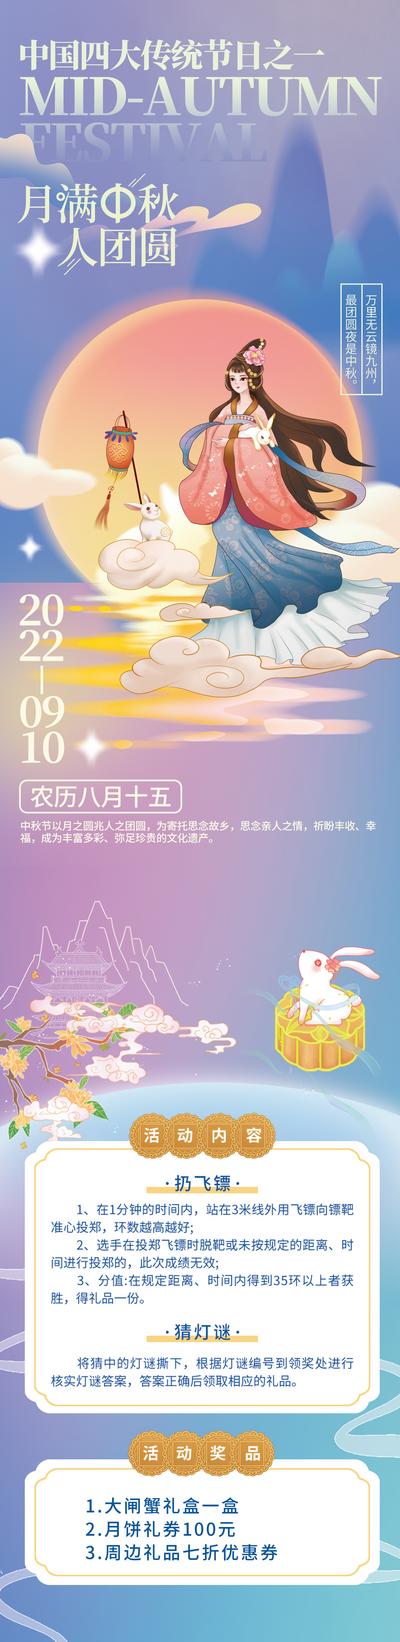 南门网 海报 中国传统节日 中秋节 活动 弥散 简约 唯美 创意 嫦娥奔月 长图